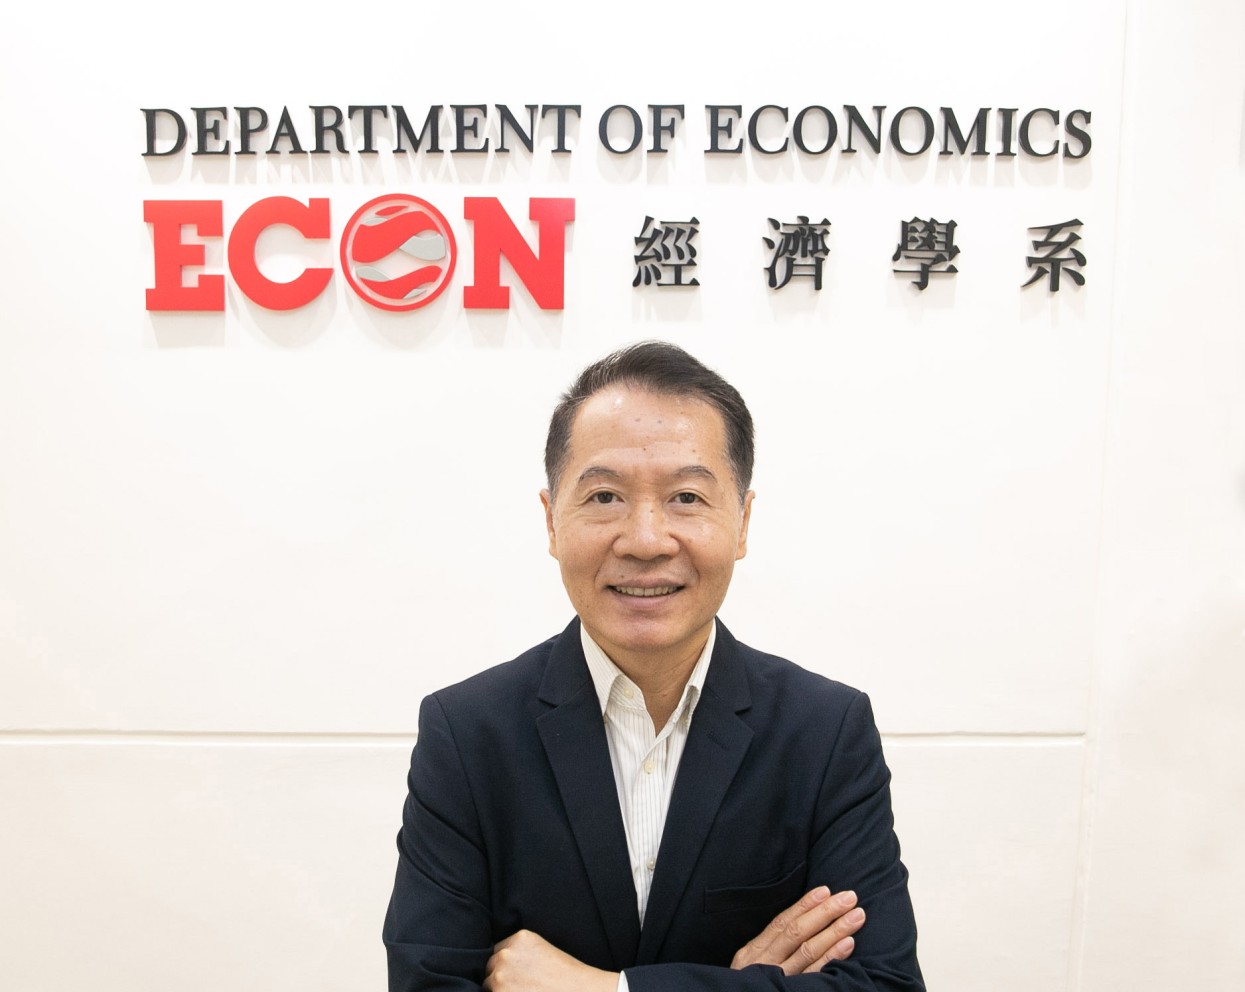  實用經濟學及管理: 丘東曉教授